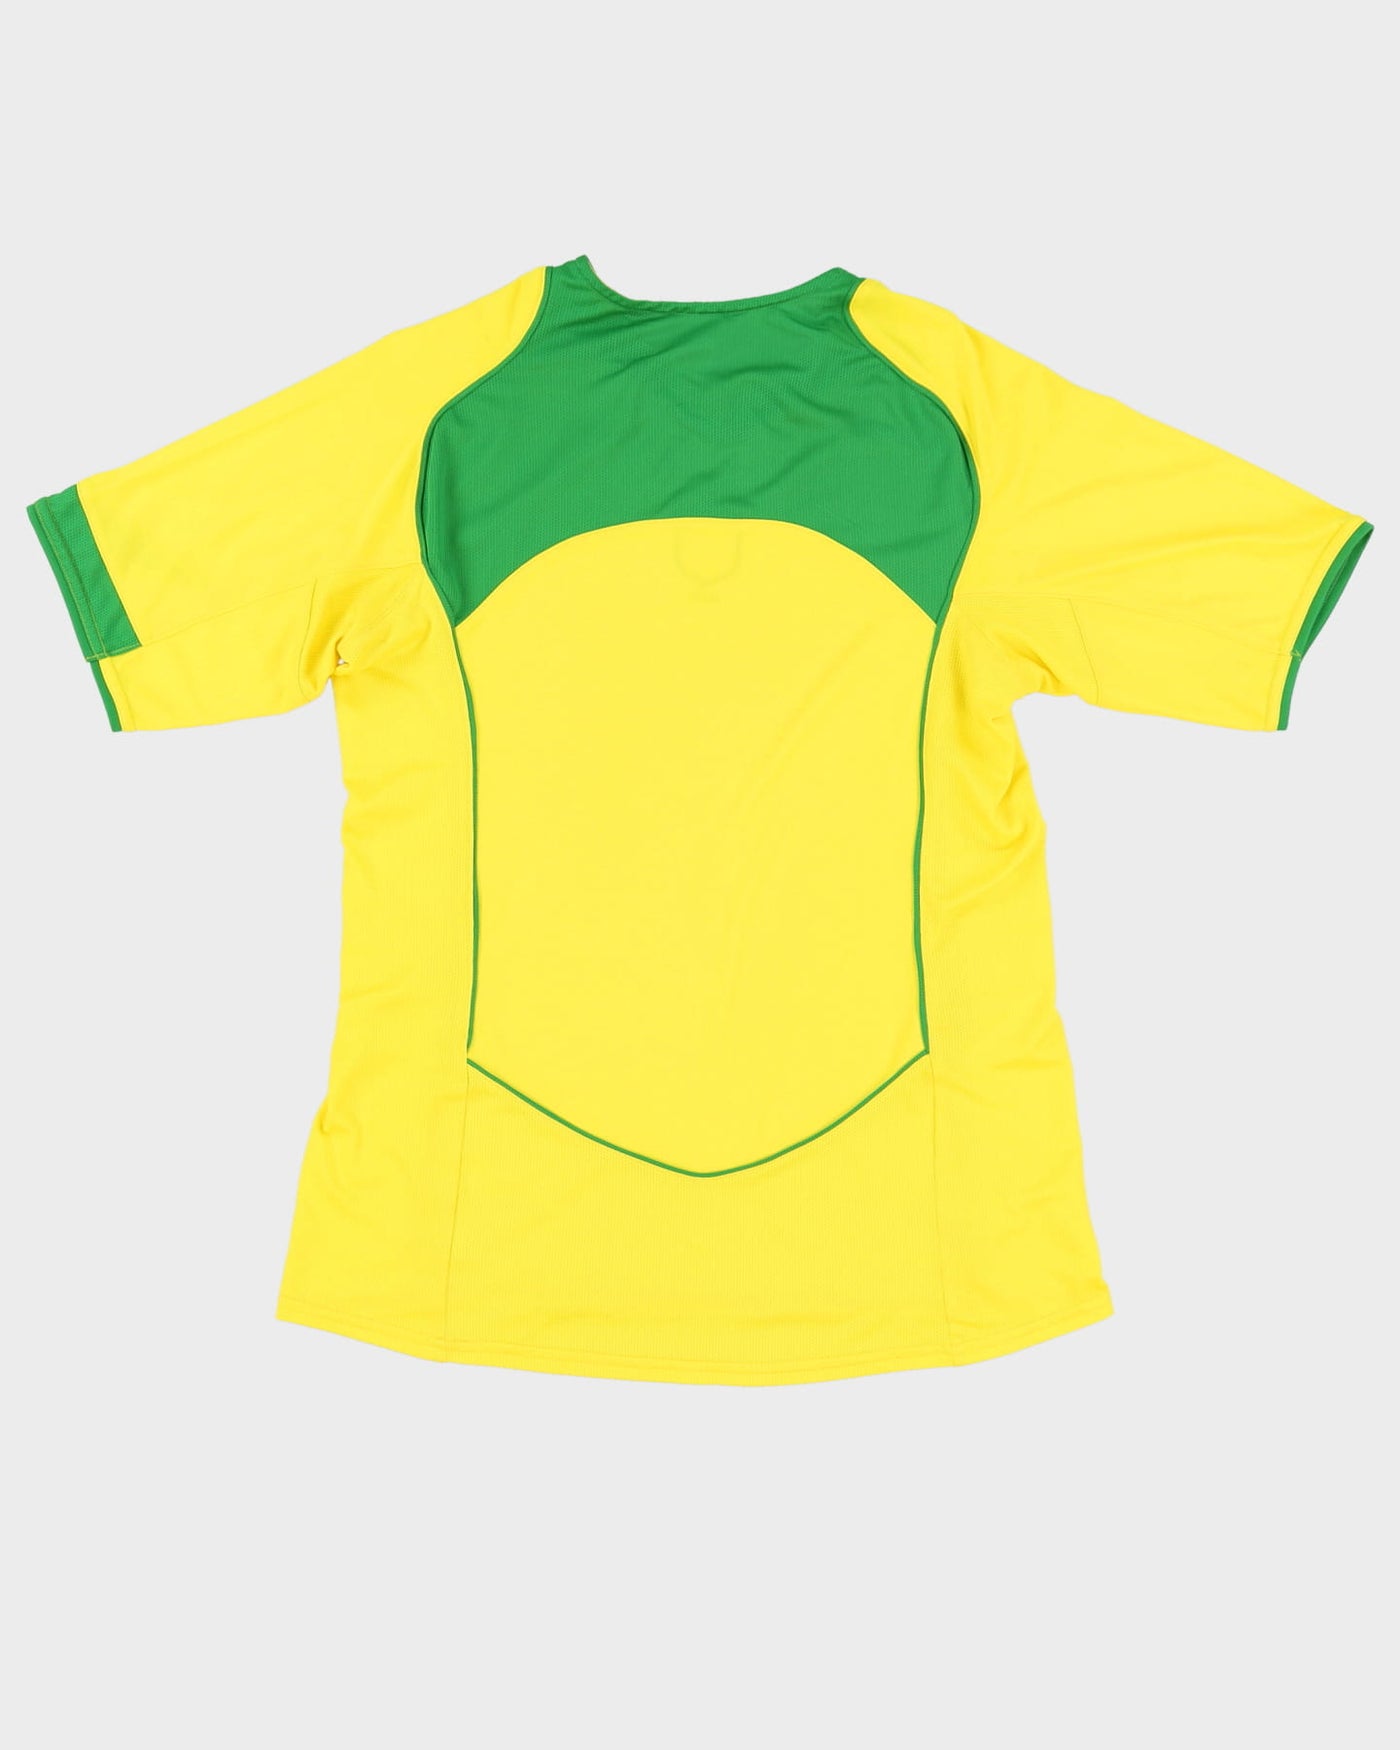 Nike Brazil 2004-06 Yellow Football Shirt / Jersey - L